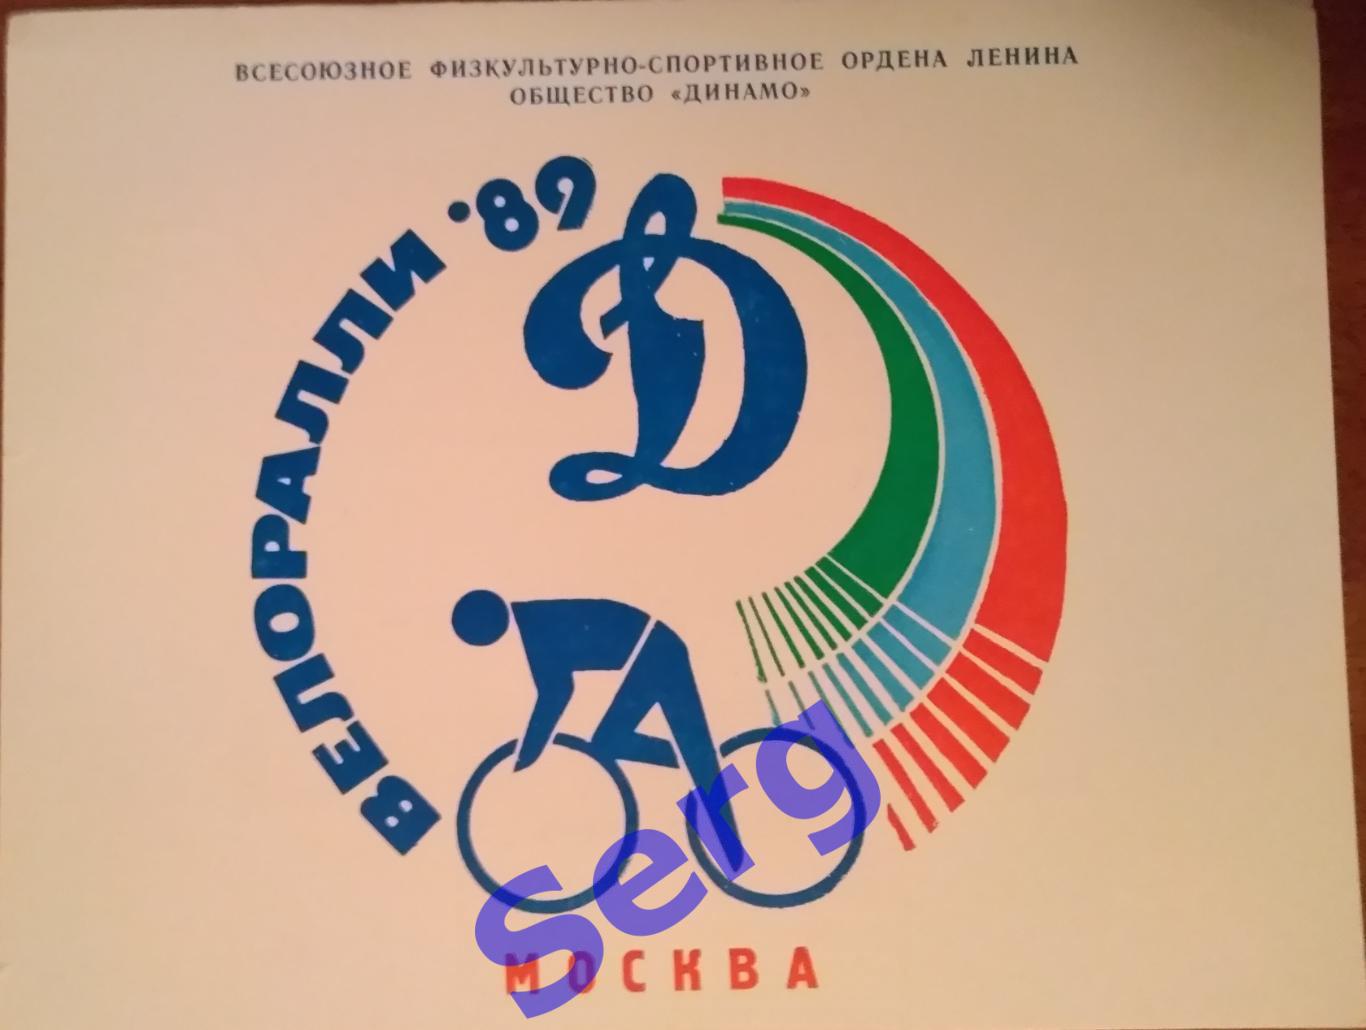 Свидетельство участника Велоралли-89 04 июня 1989 год. г. Москва